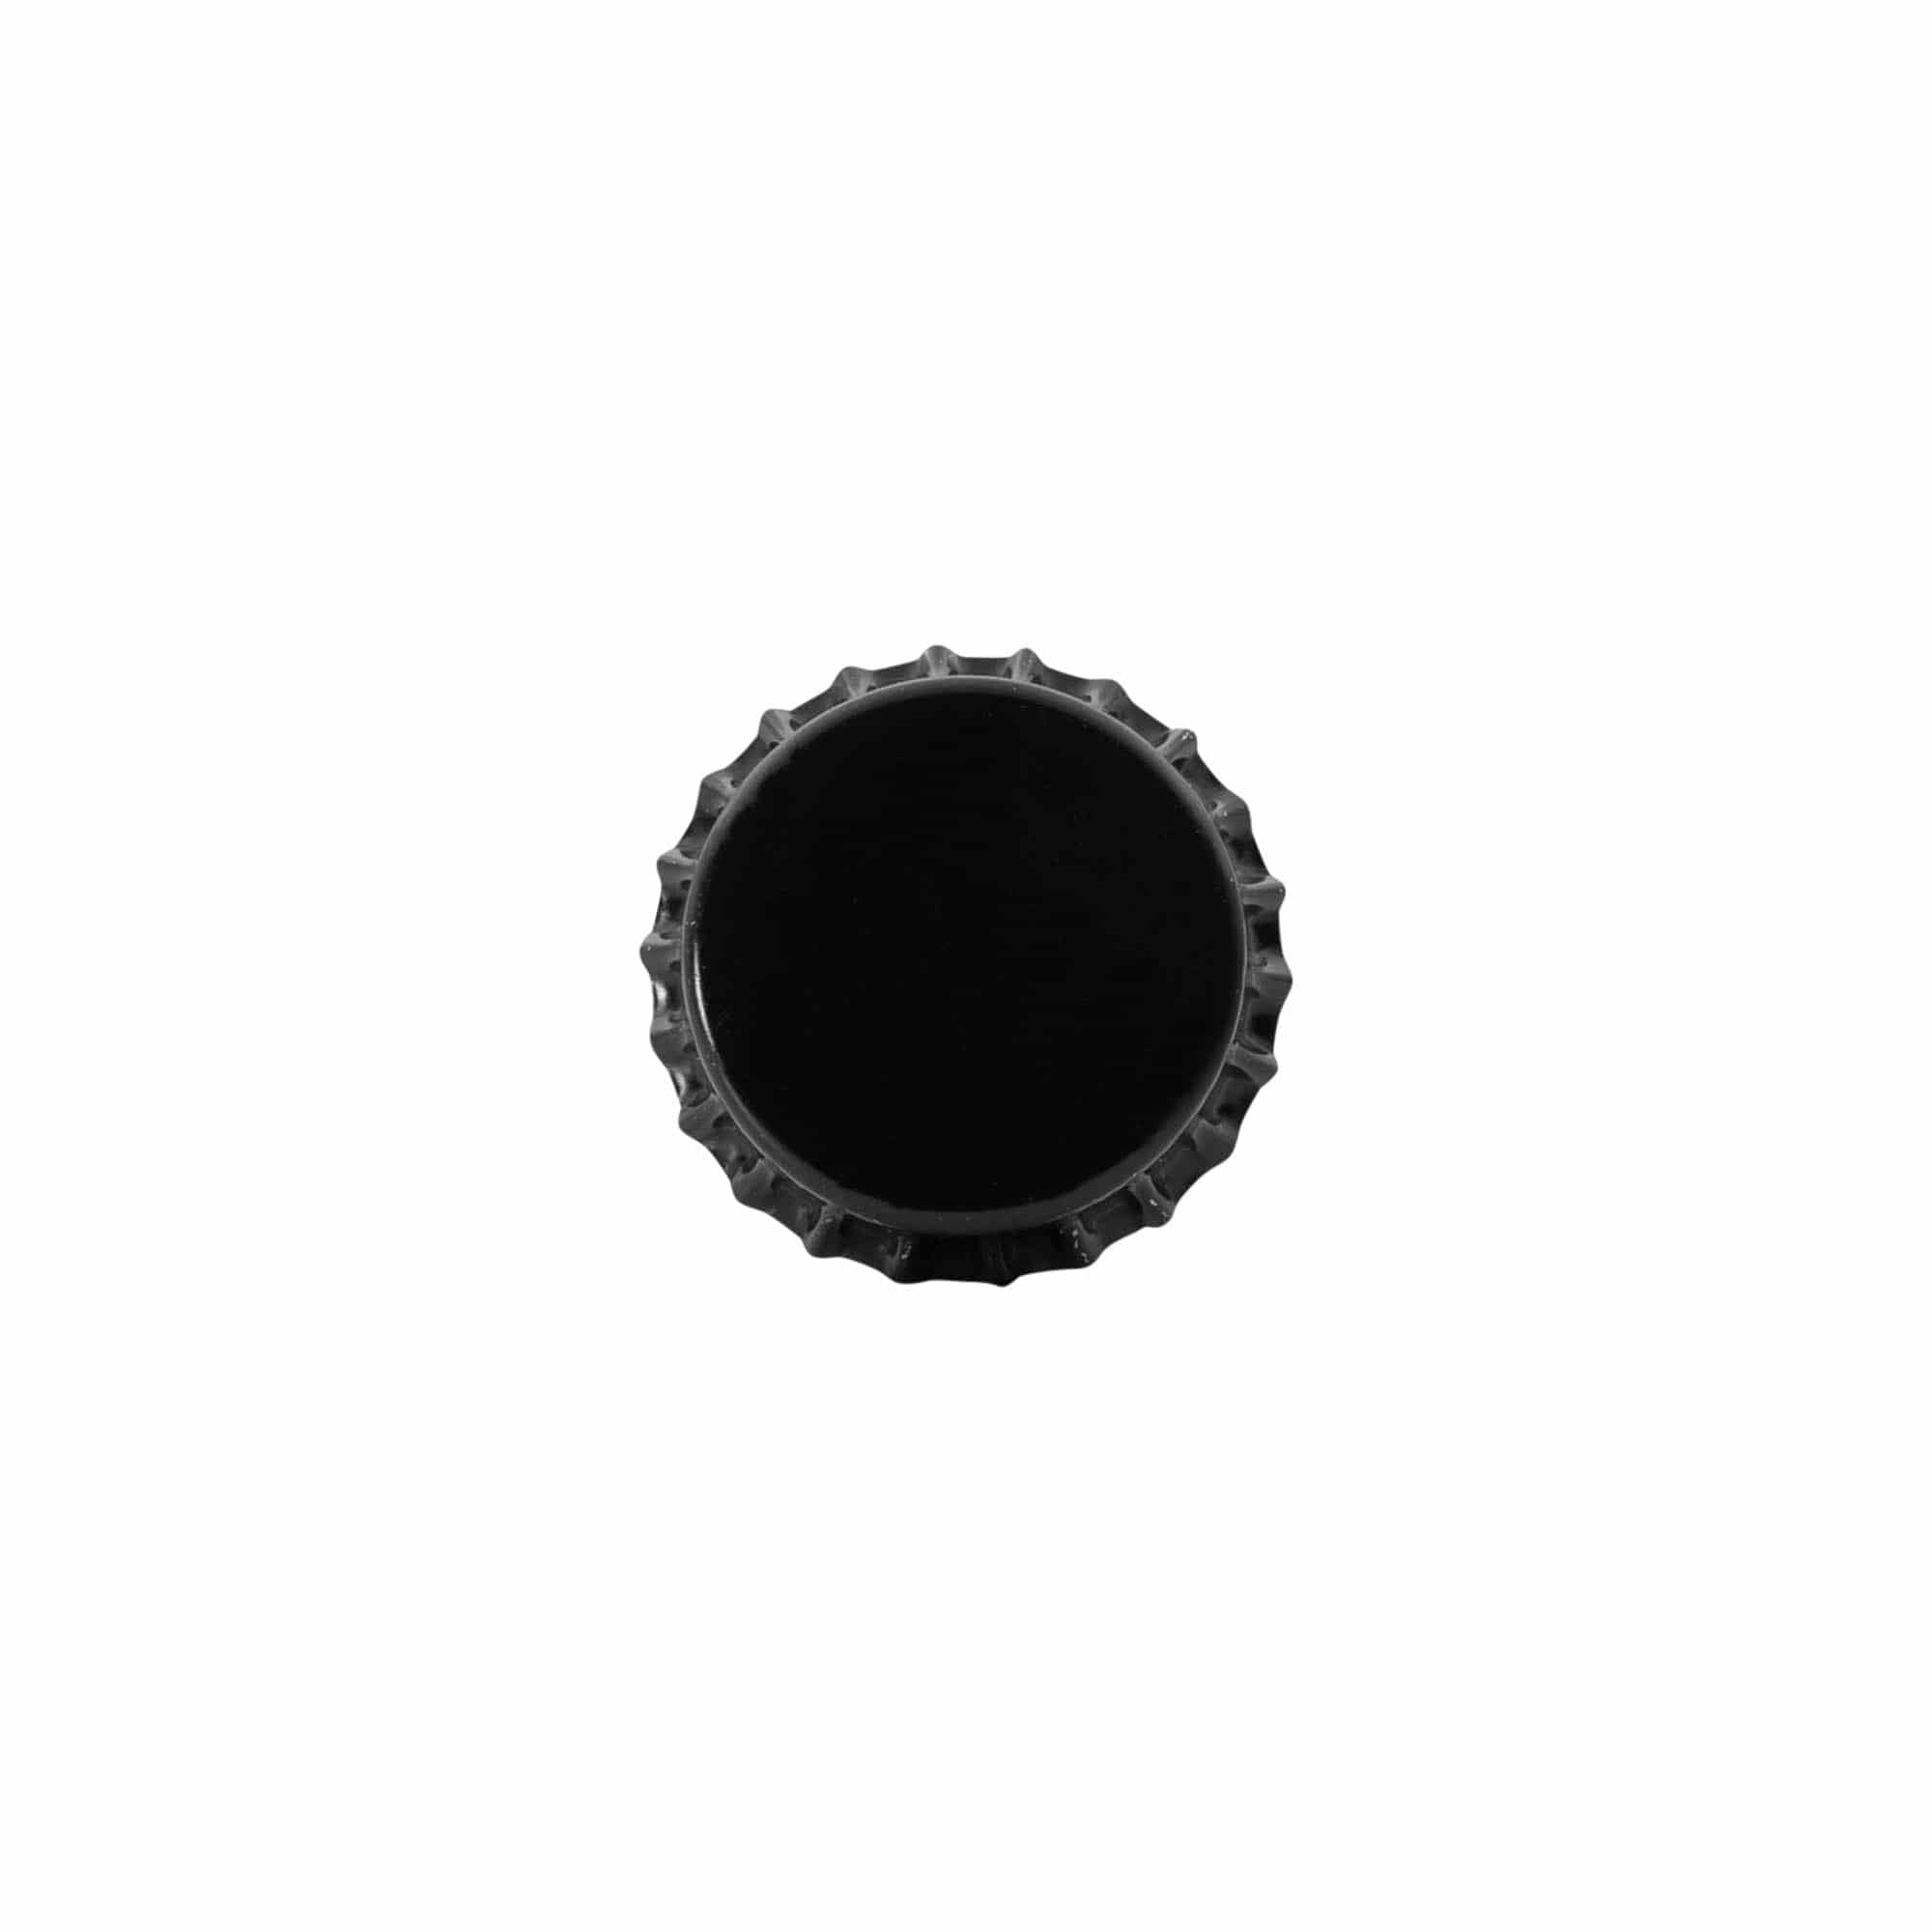 Kapsel 29 mm, metal, kolor czarny